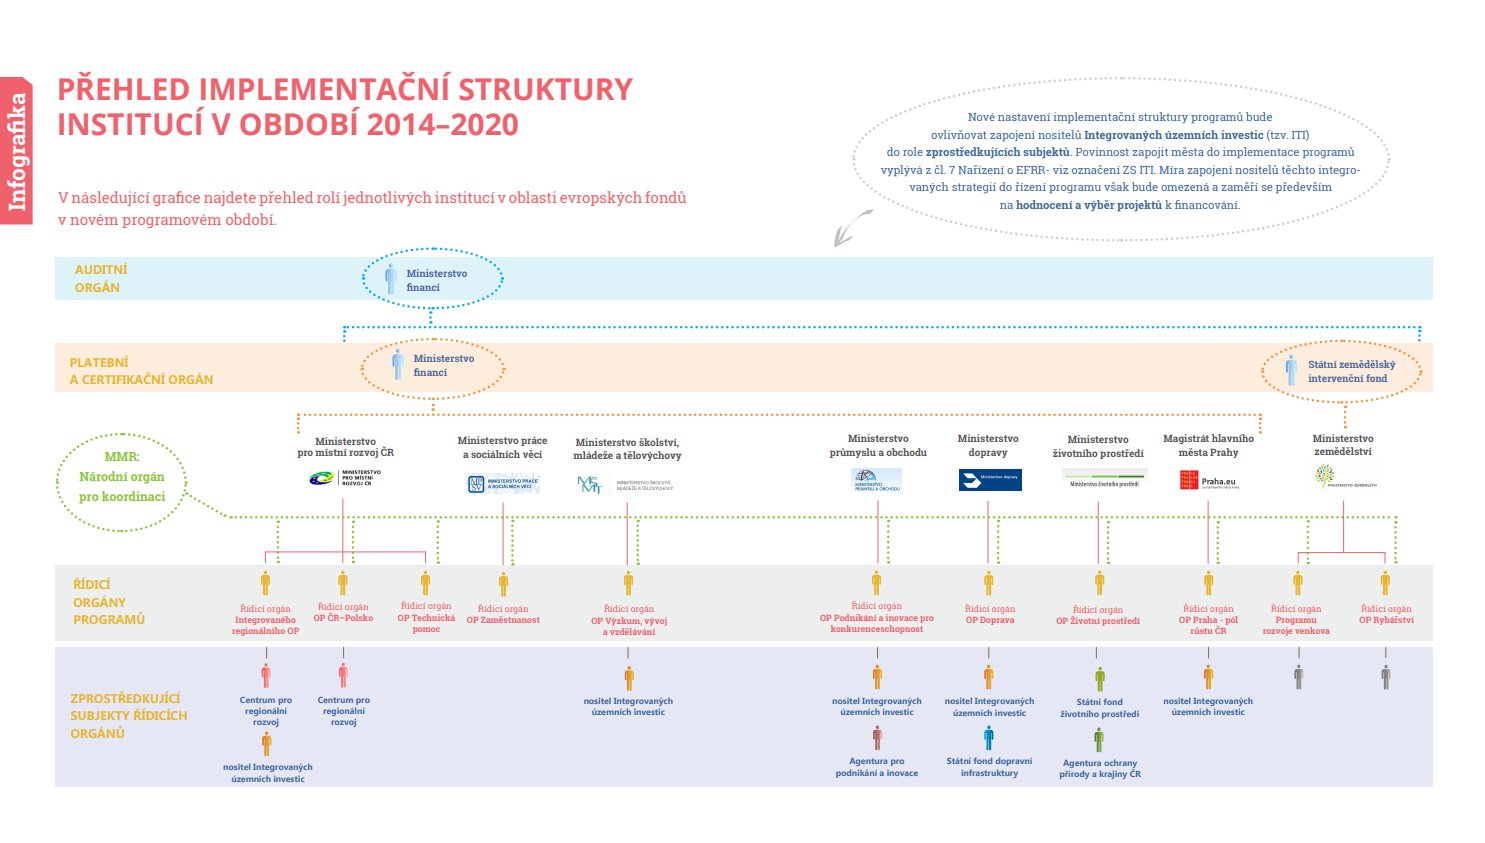 léto 2015 - Implementační struktura 2014-2020